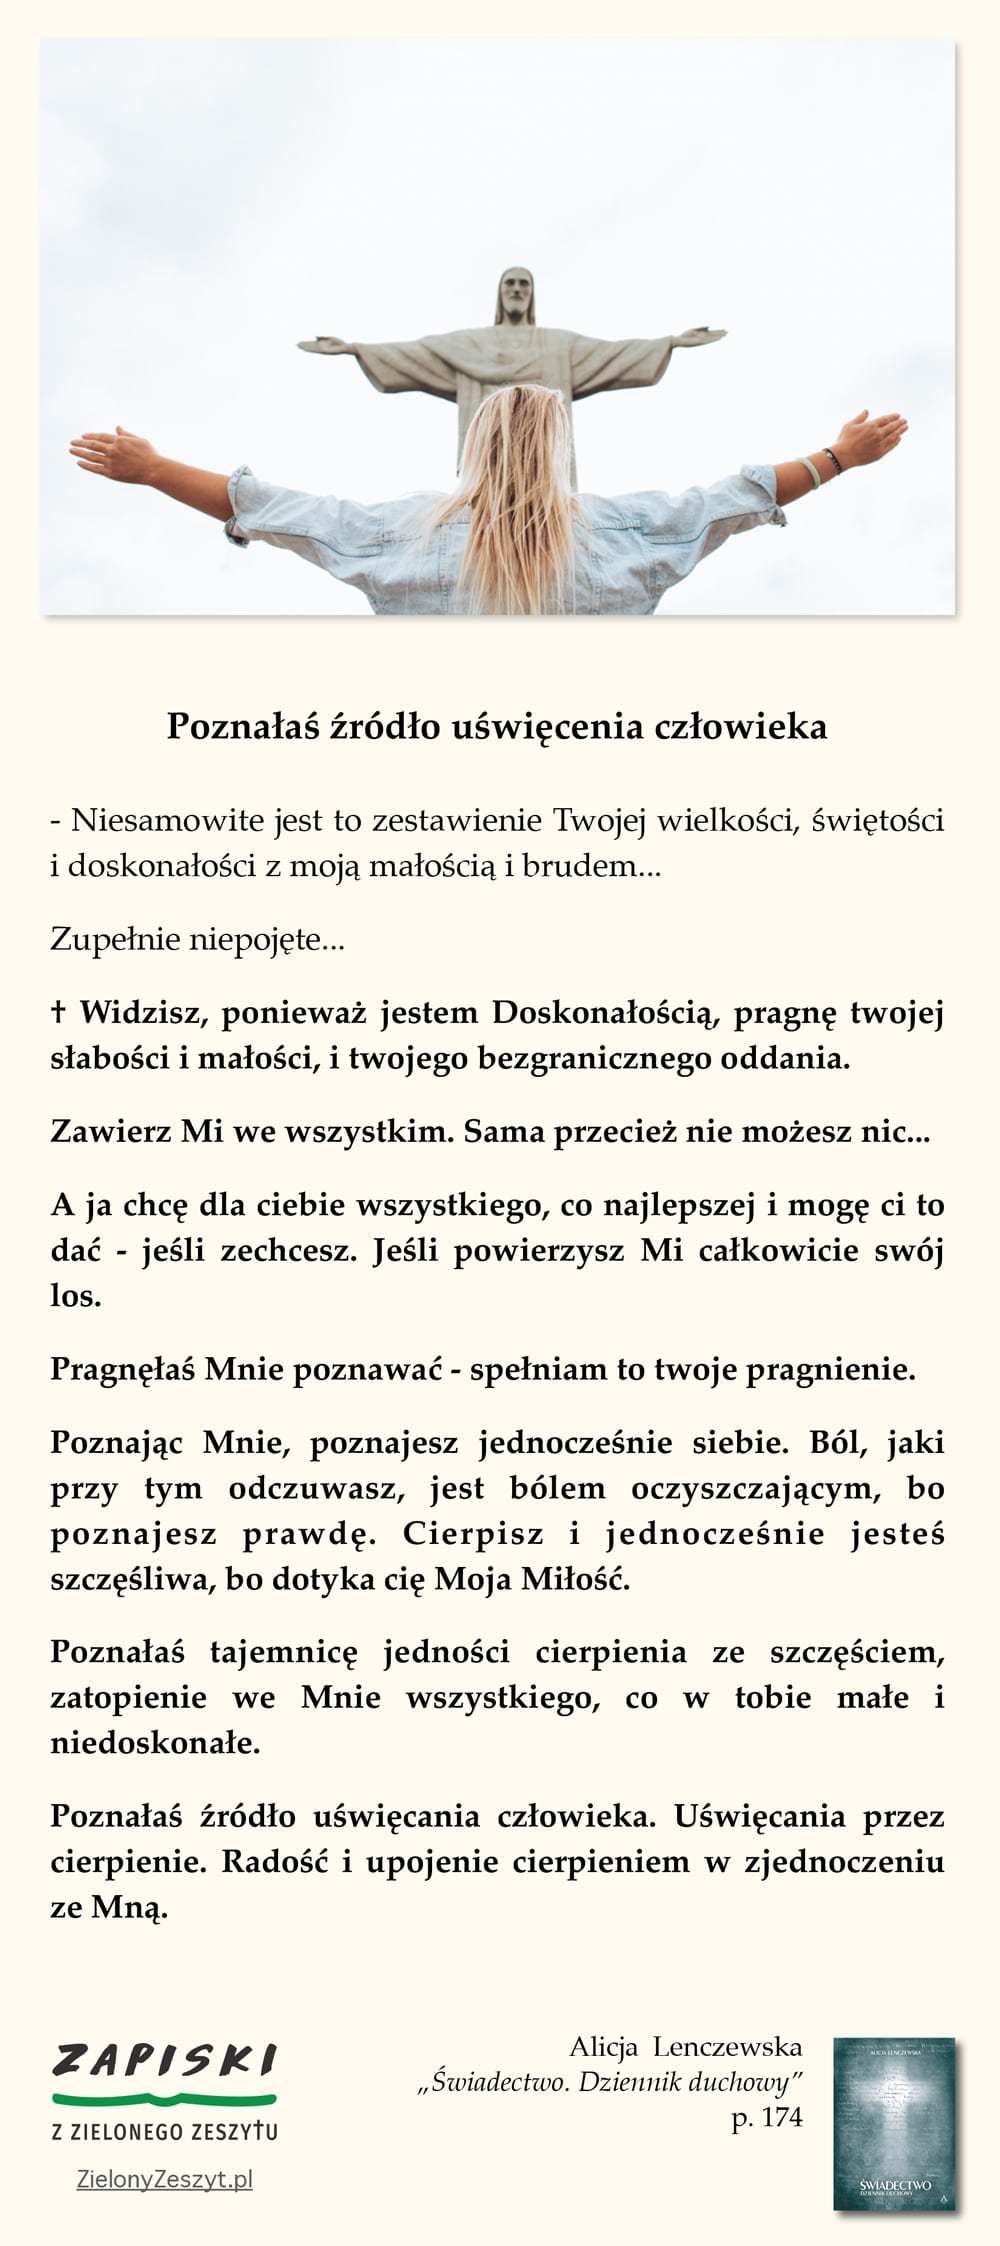 Alicja Lenczewska, "Świadectwo. Dziennik duchowy", p. 174 (Poznałaś źródło uświęcenia człowieka)